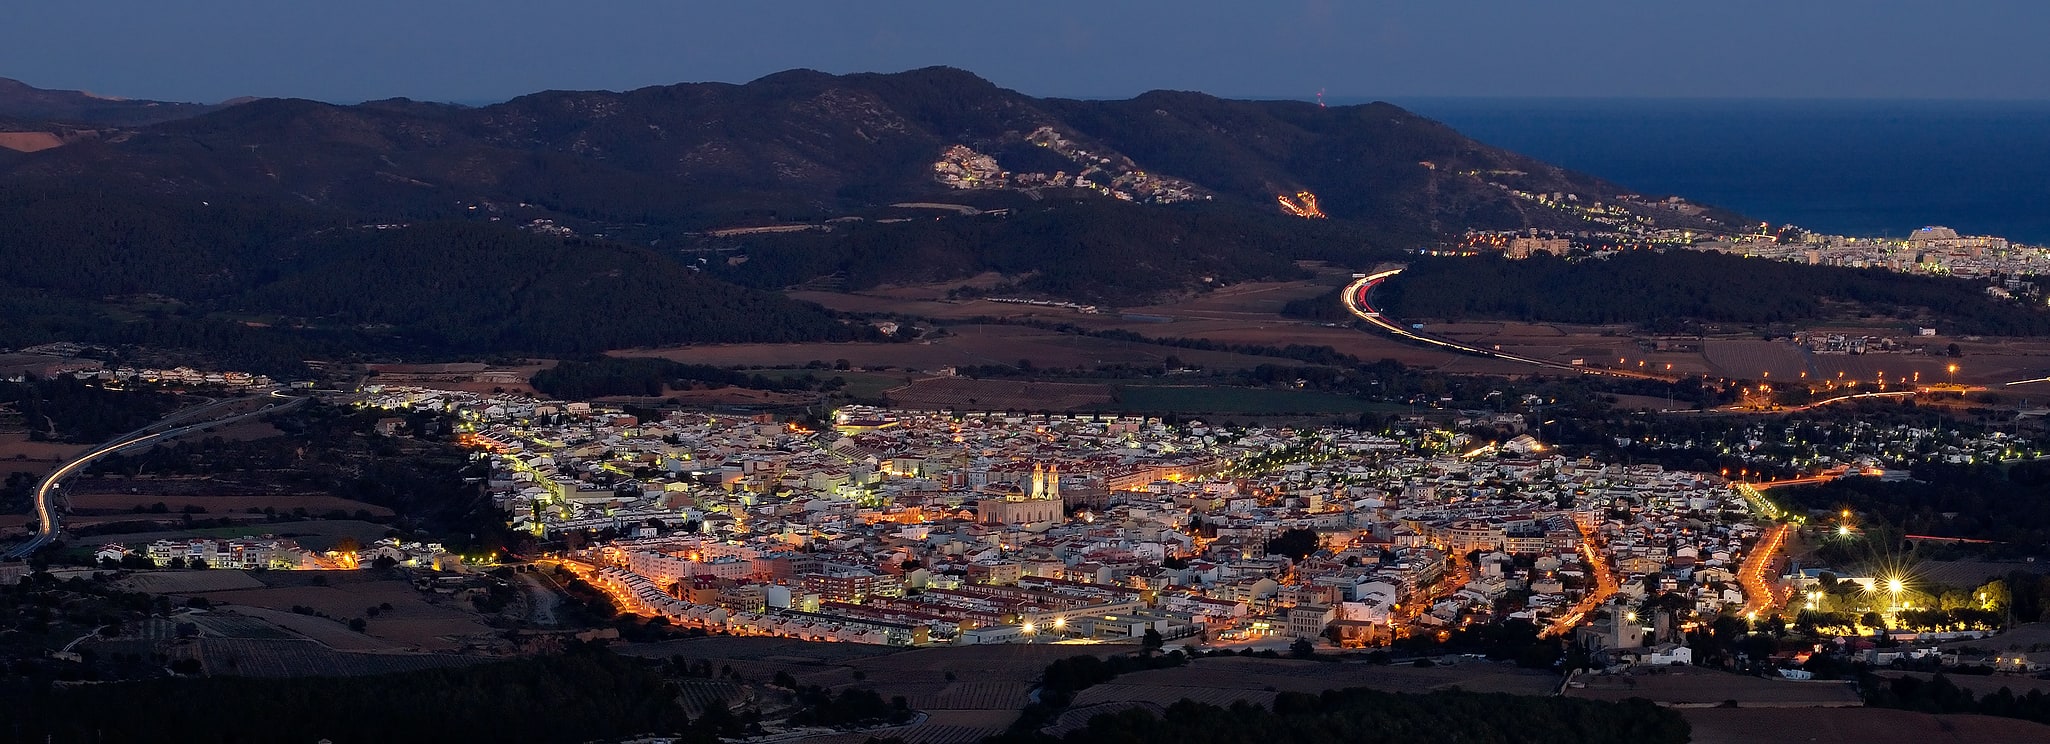 Sant Pere de Ribes, Spain